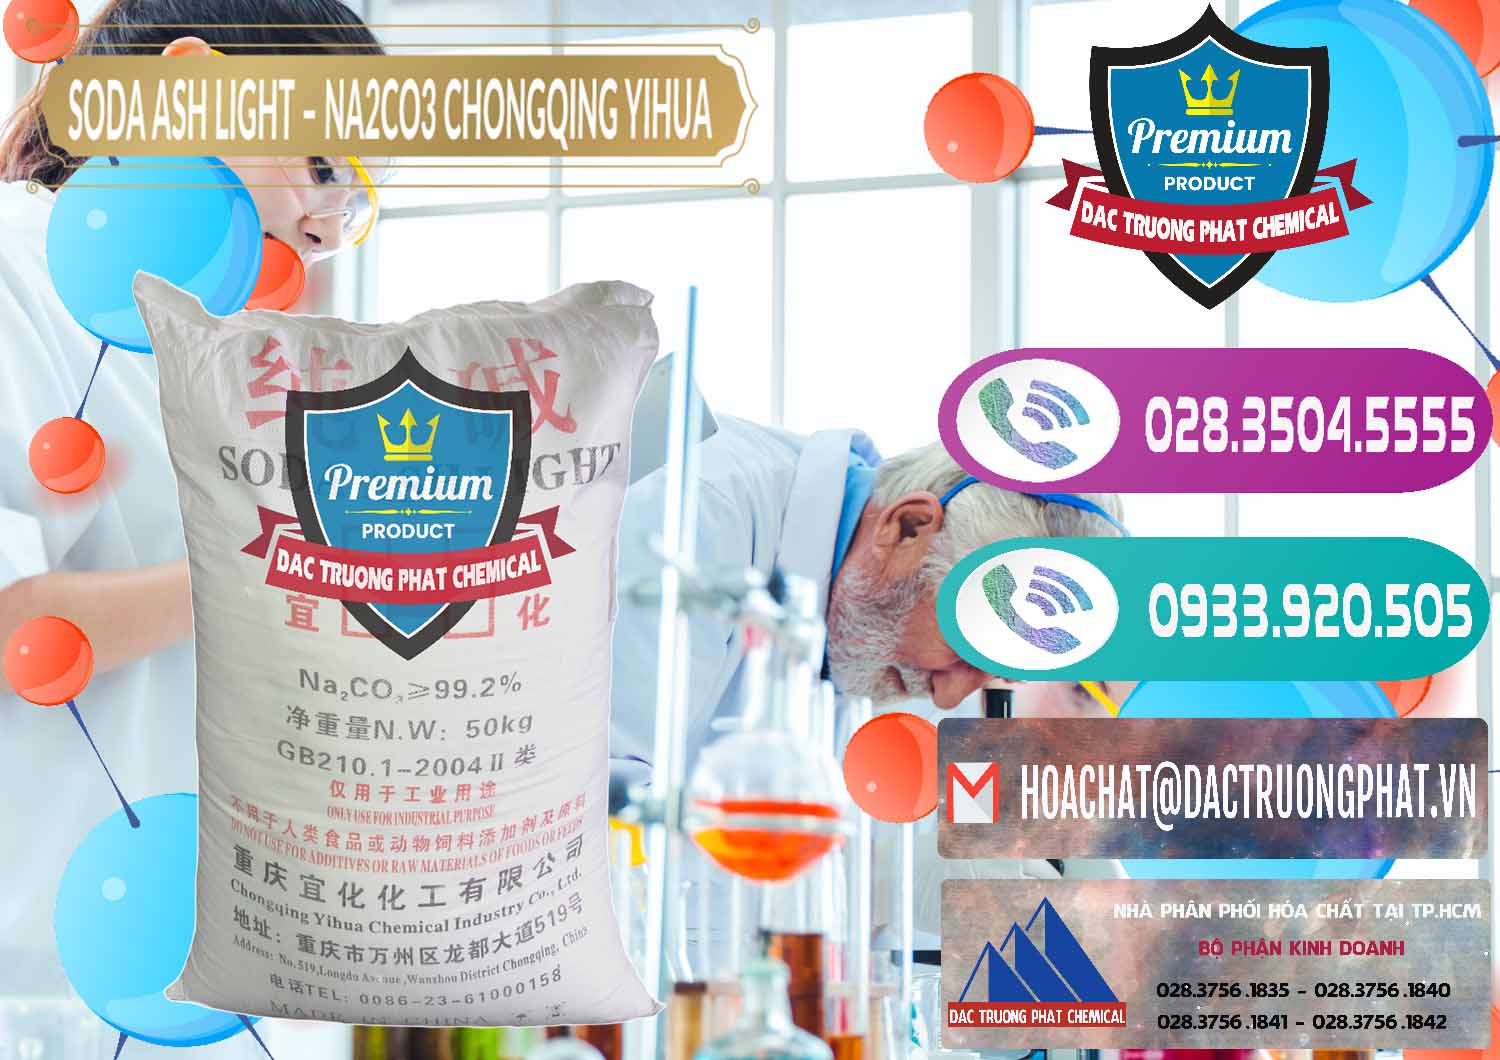 Nơi bán & phân phối Soda Ash Light - NA2CO3 Chongqing Yihua Trung Quốc China - 0129 - Nhà cung cấp & kinh doanh hóa chất tại TP.HCM - hoachatxulynuoc.com